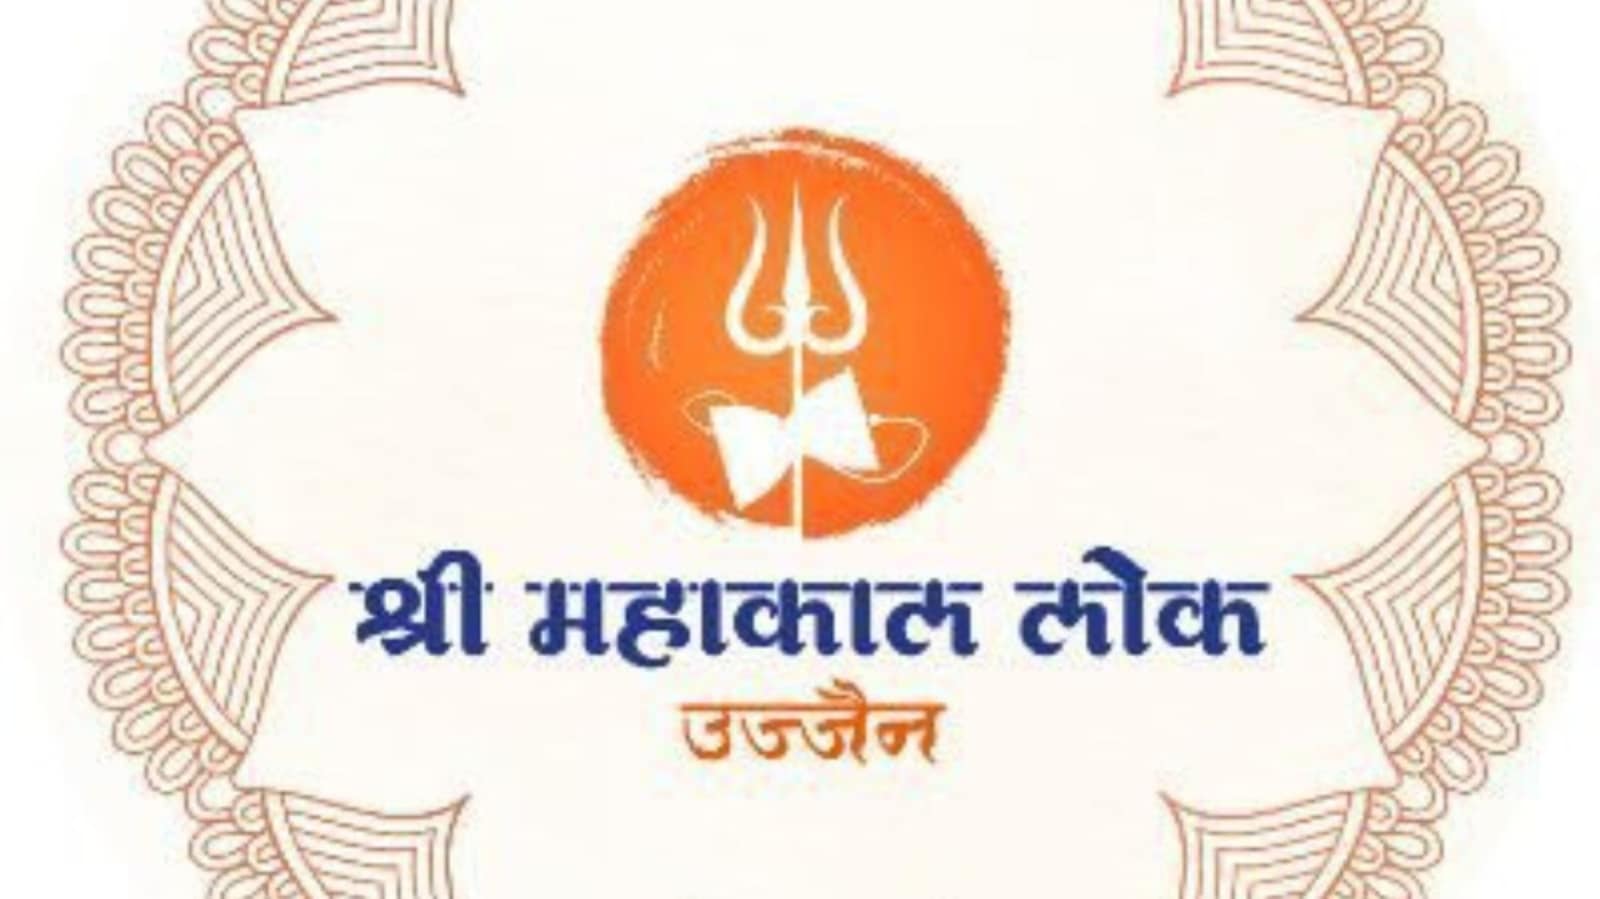 Buy Mahakal Shiva Spiritual Graphics Printed T-Shirt - WYO.in